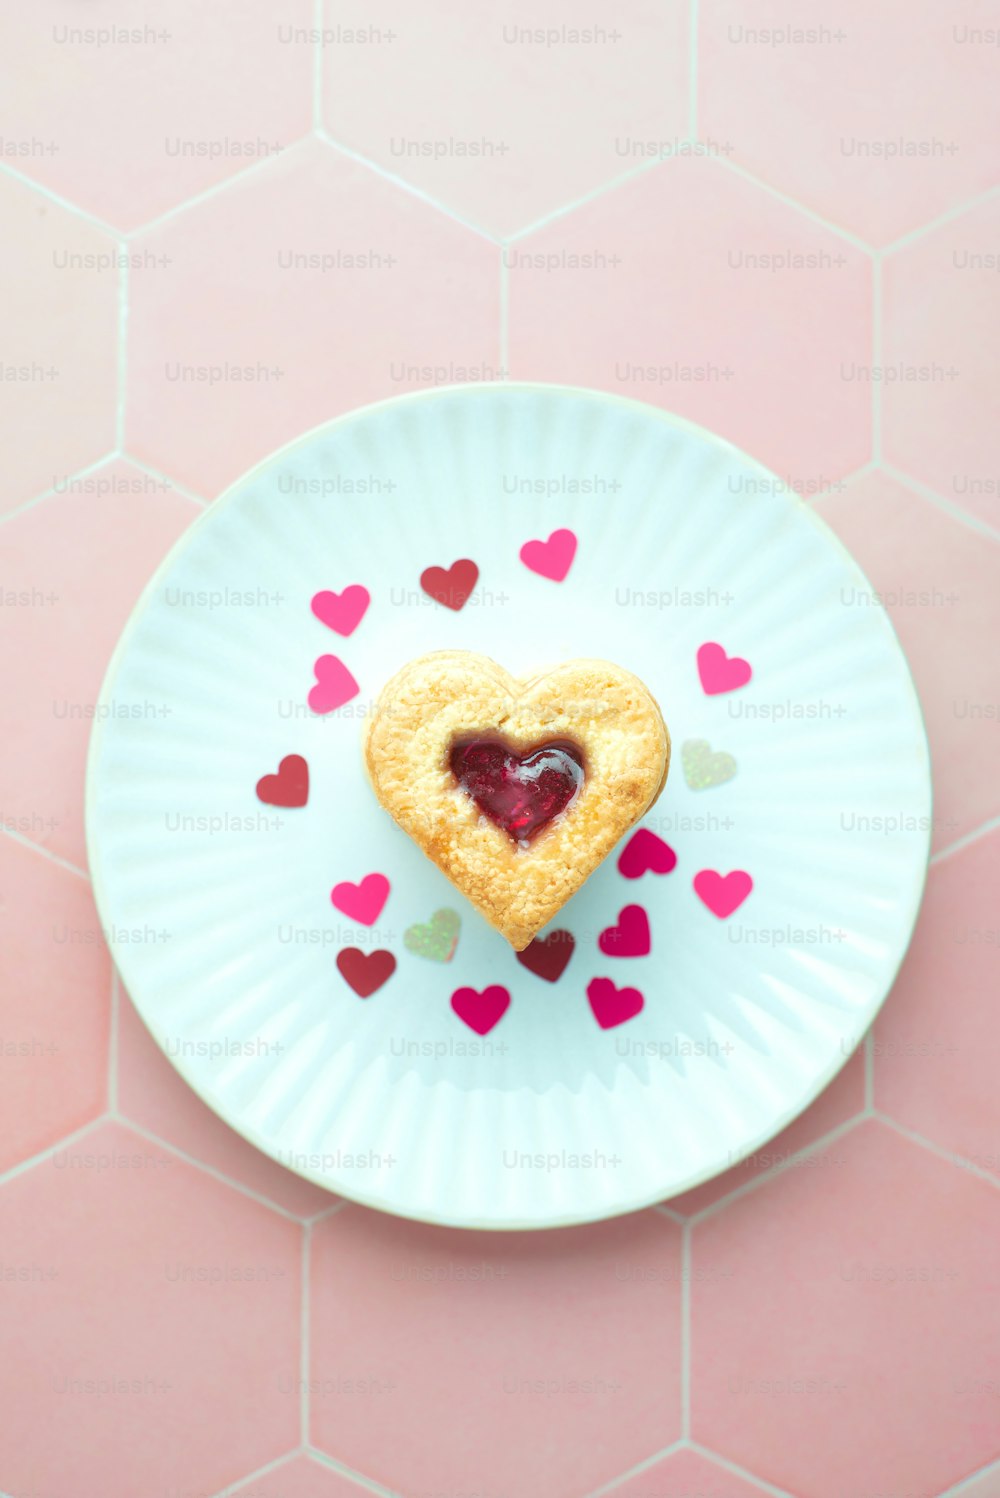 un biscuit en forme de cœur sur une assiette avec des cœurs dessus